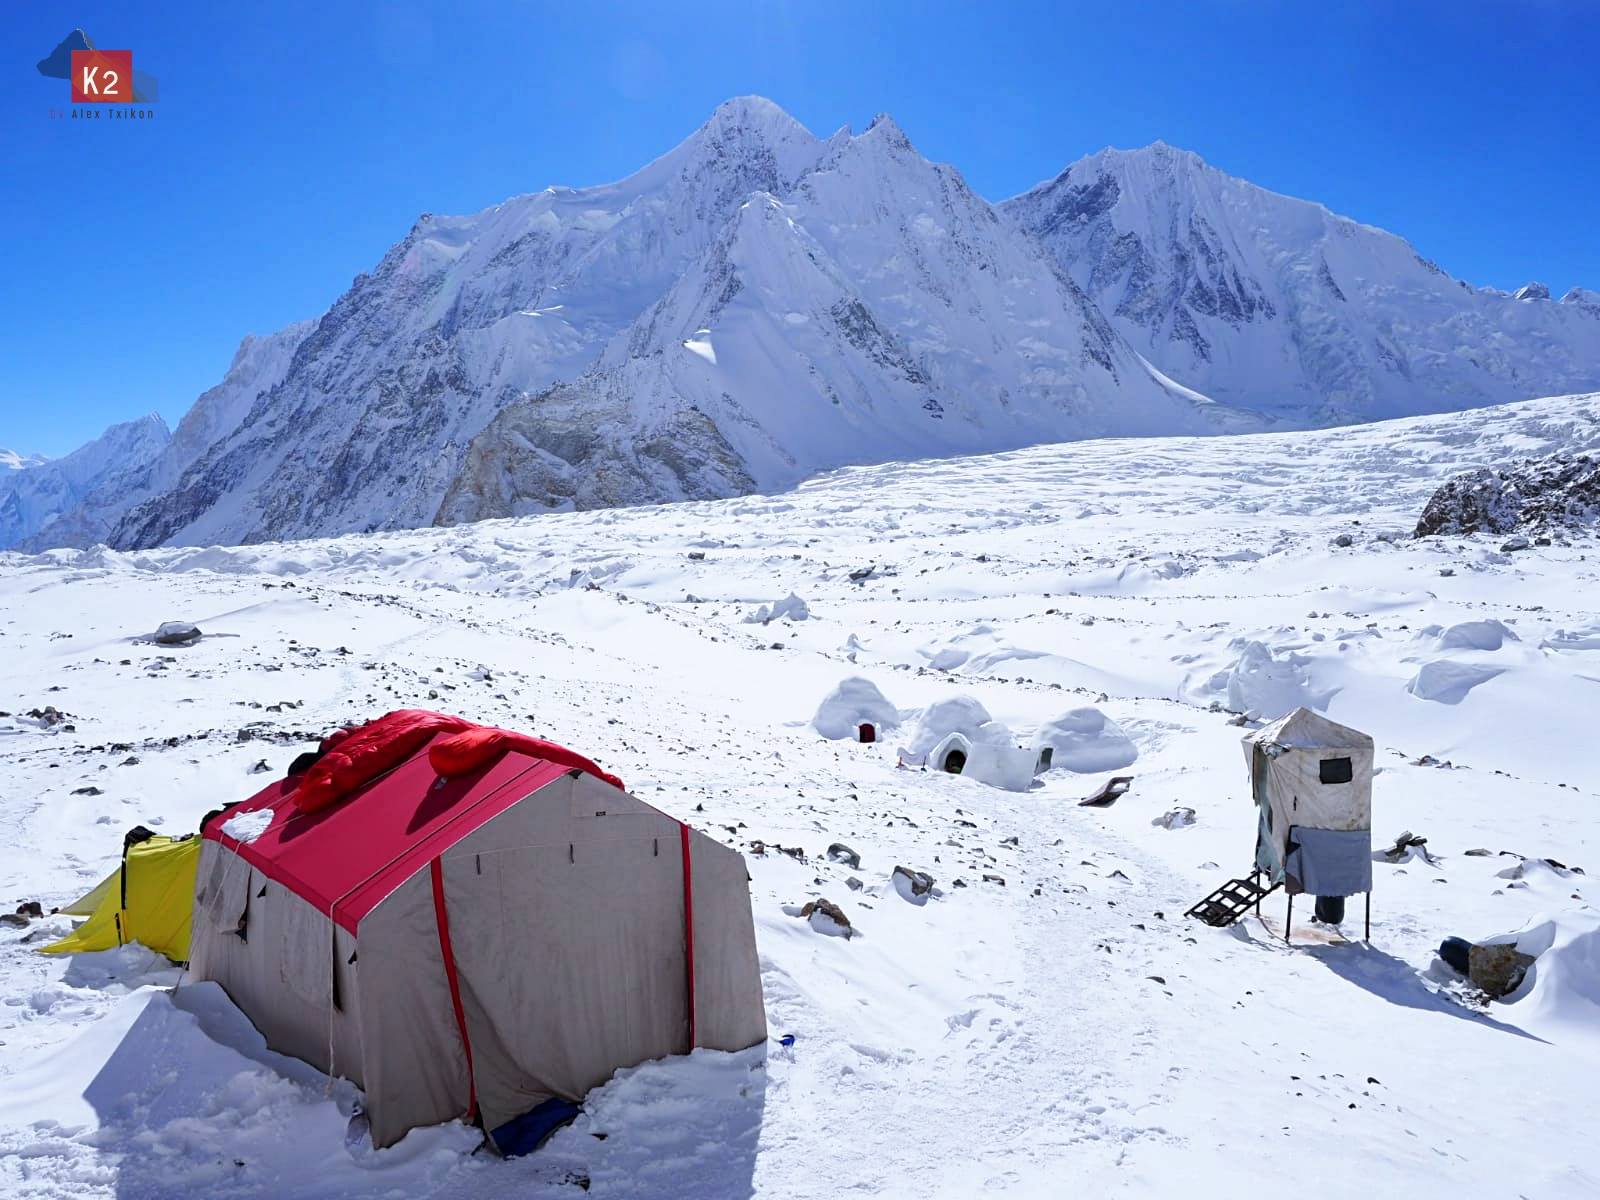 Базовый лагерь на восьмитысячнике К2. Фото Alex Txikon